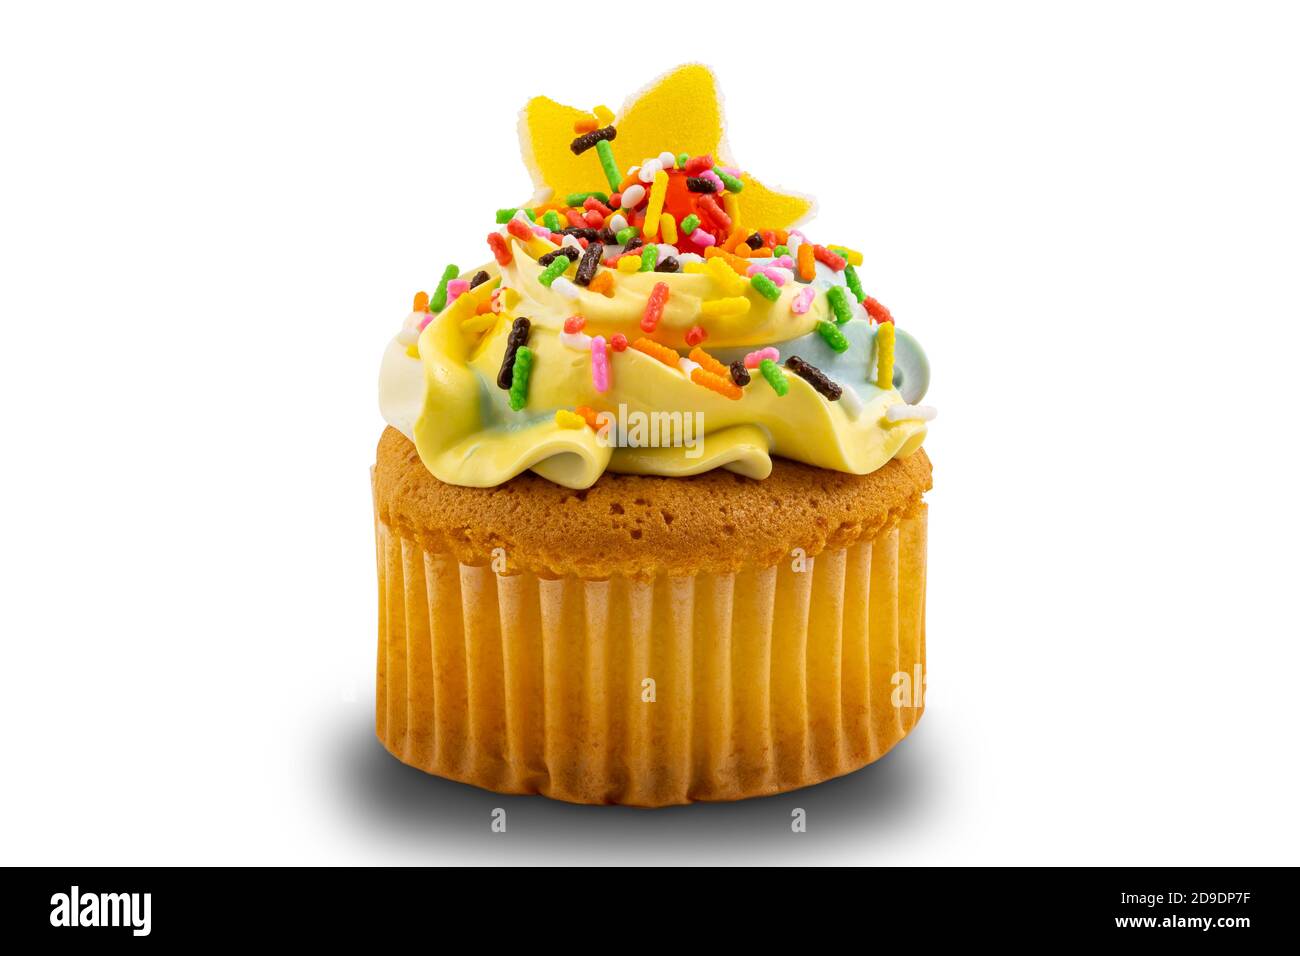 Cupcake alla vaniglia con crema di burro multicolore, decorata con coloratissimi spruzzi isolati su sfondo bianco con percorso di ritaglio. Foto Stock